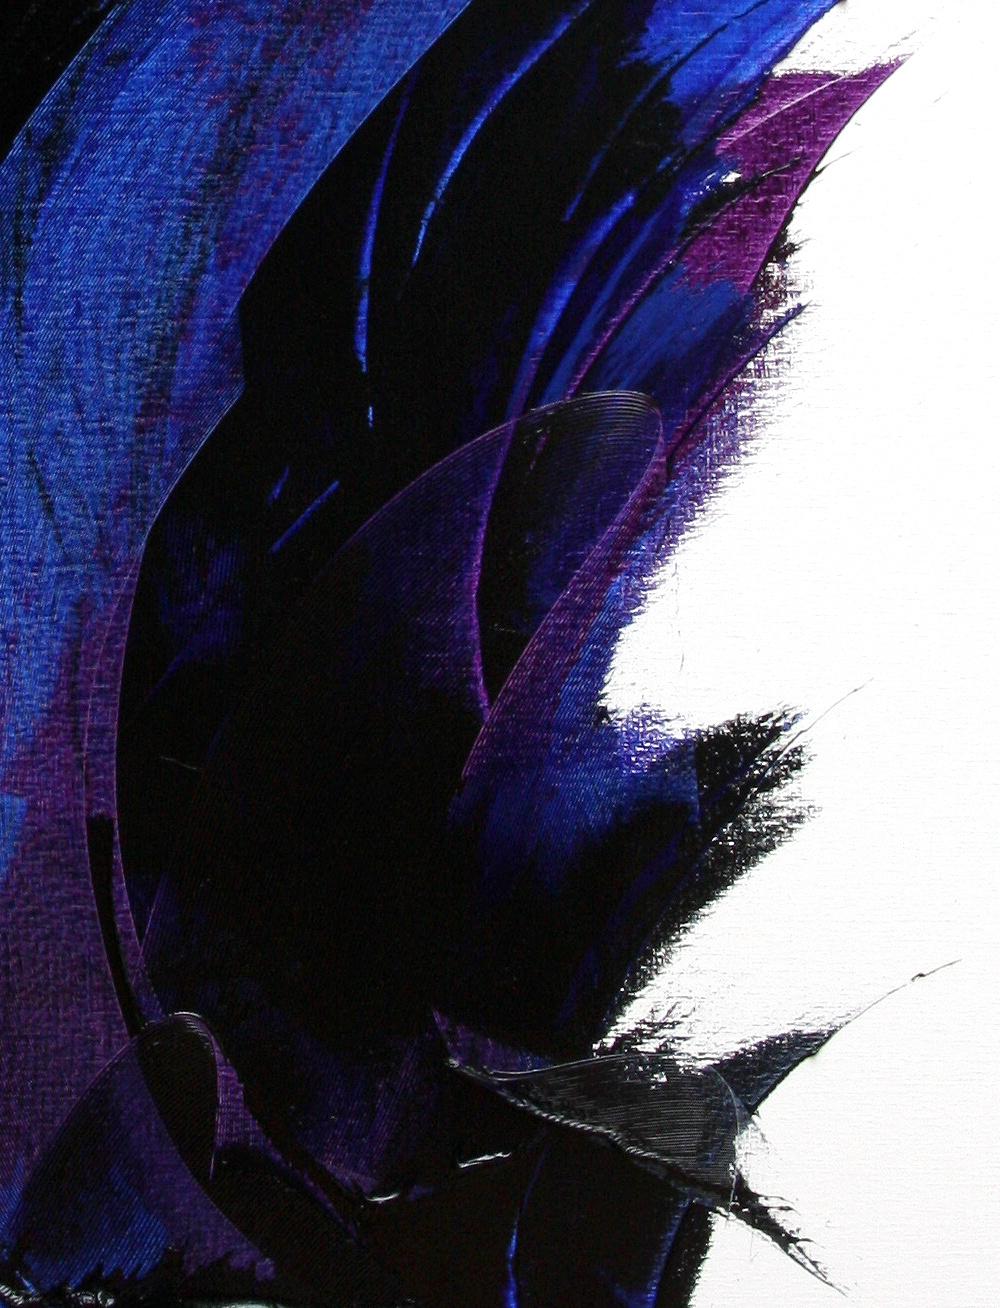 Dieses große Kunstwerk ist ein wahres Meisterwerk.  Der Kamm verleiht den tiefblauen aufsteigenden Bewegungen eine überraschende Transparenz, während die violetten Schattierungen die Stärke der Schwarztöne irgendwie verstärken.  Doch die schwarzen